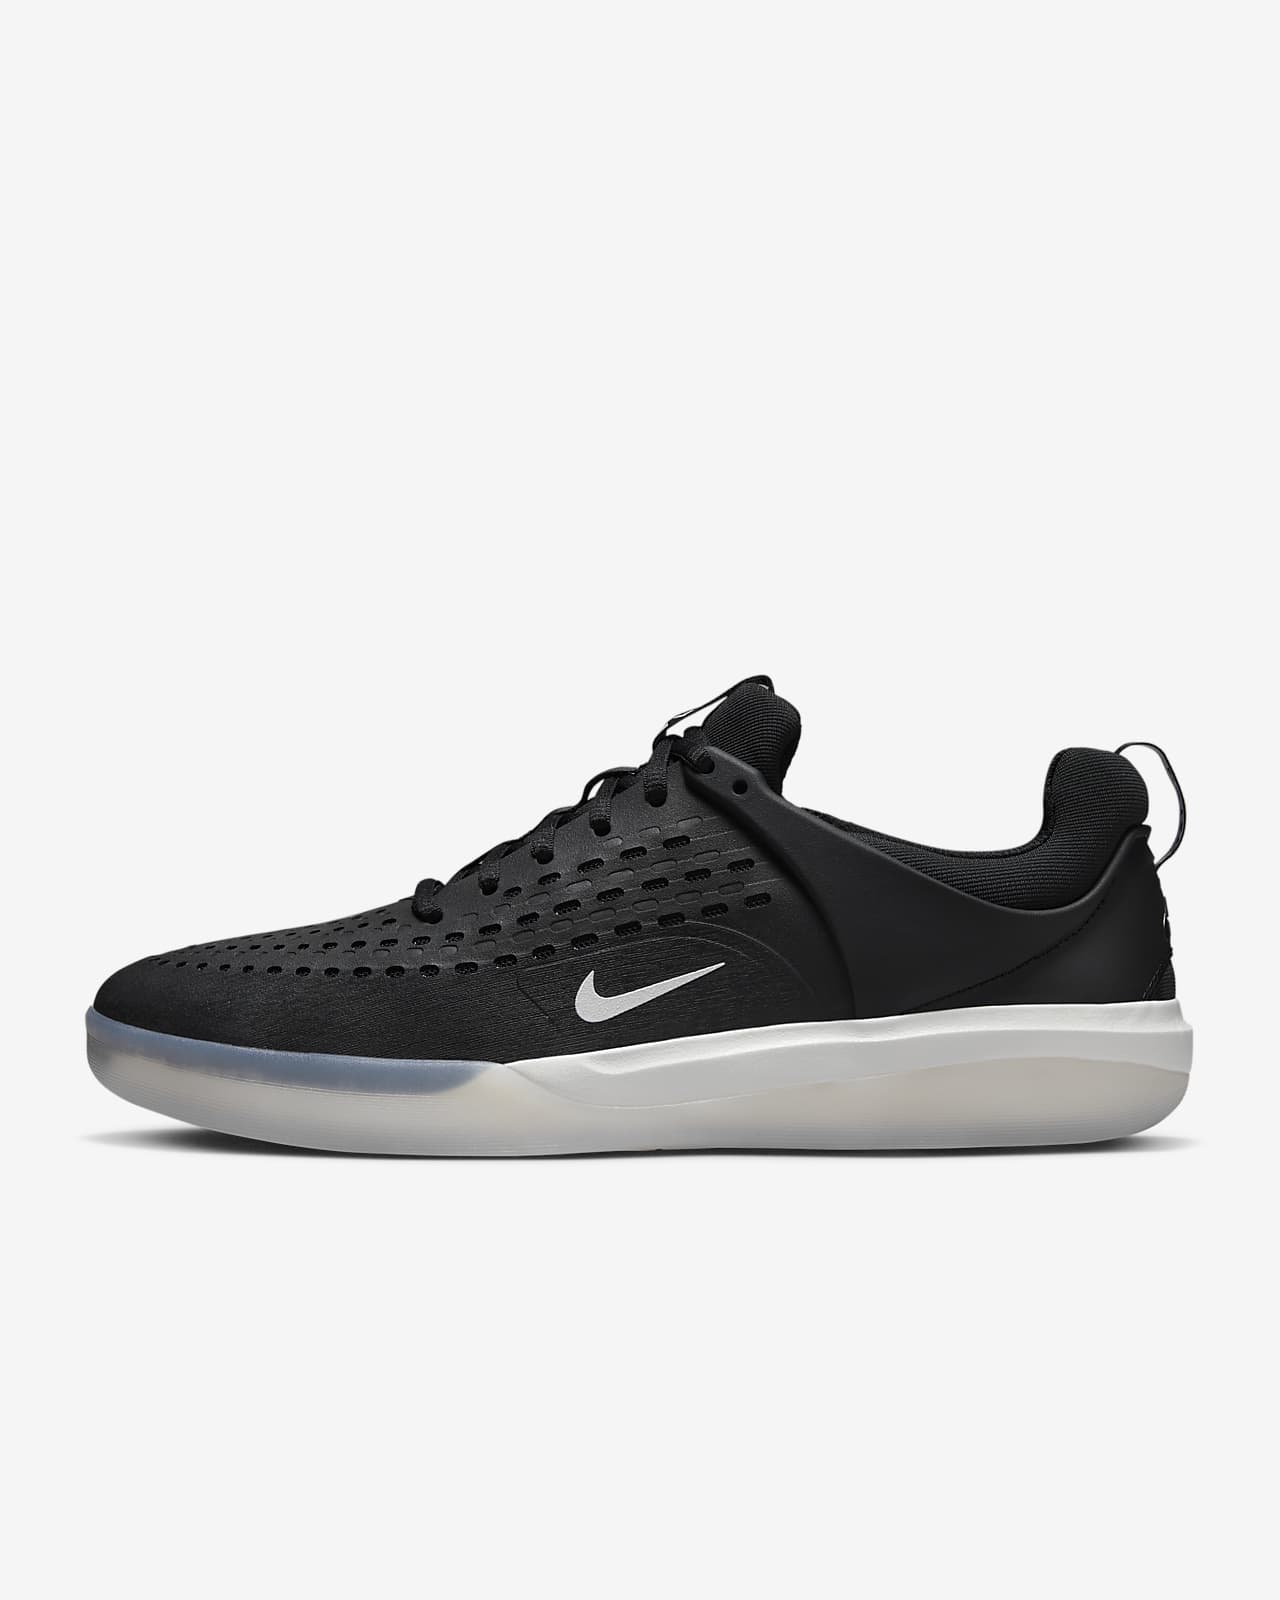 Nike SB Nyjah 3 Skate Shoes